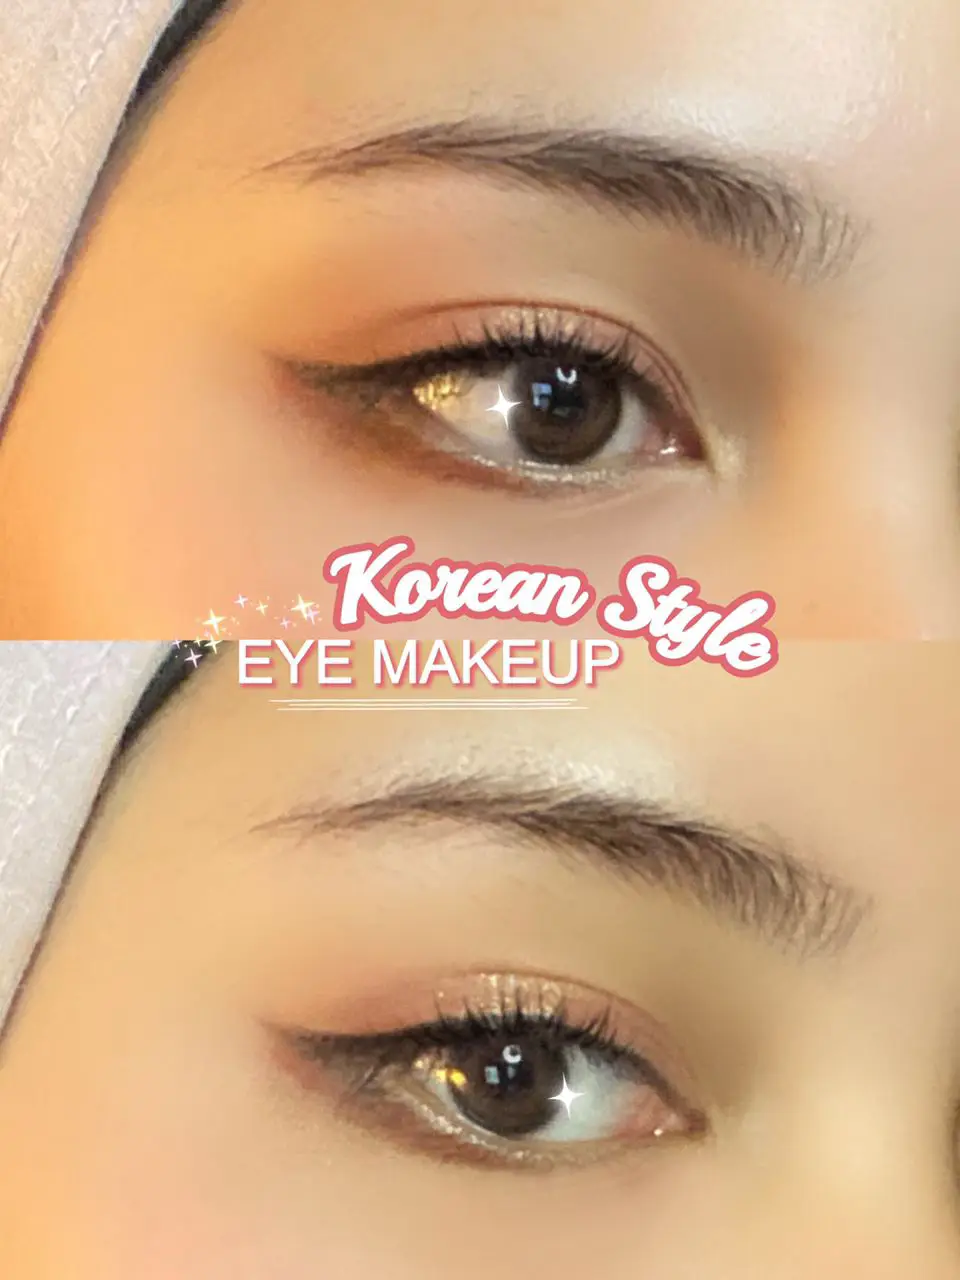 Korean Style Eye Makeup Gallery